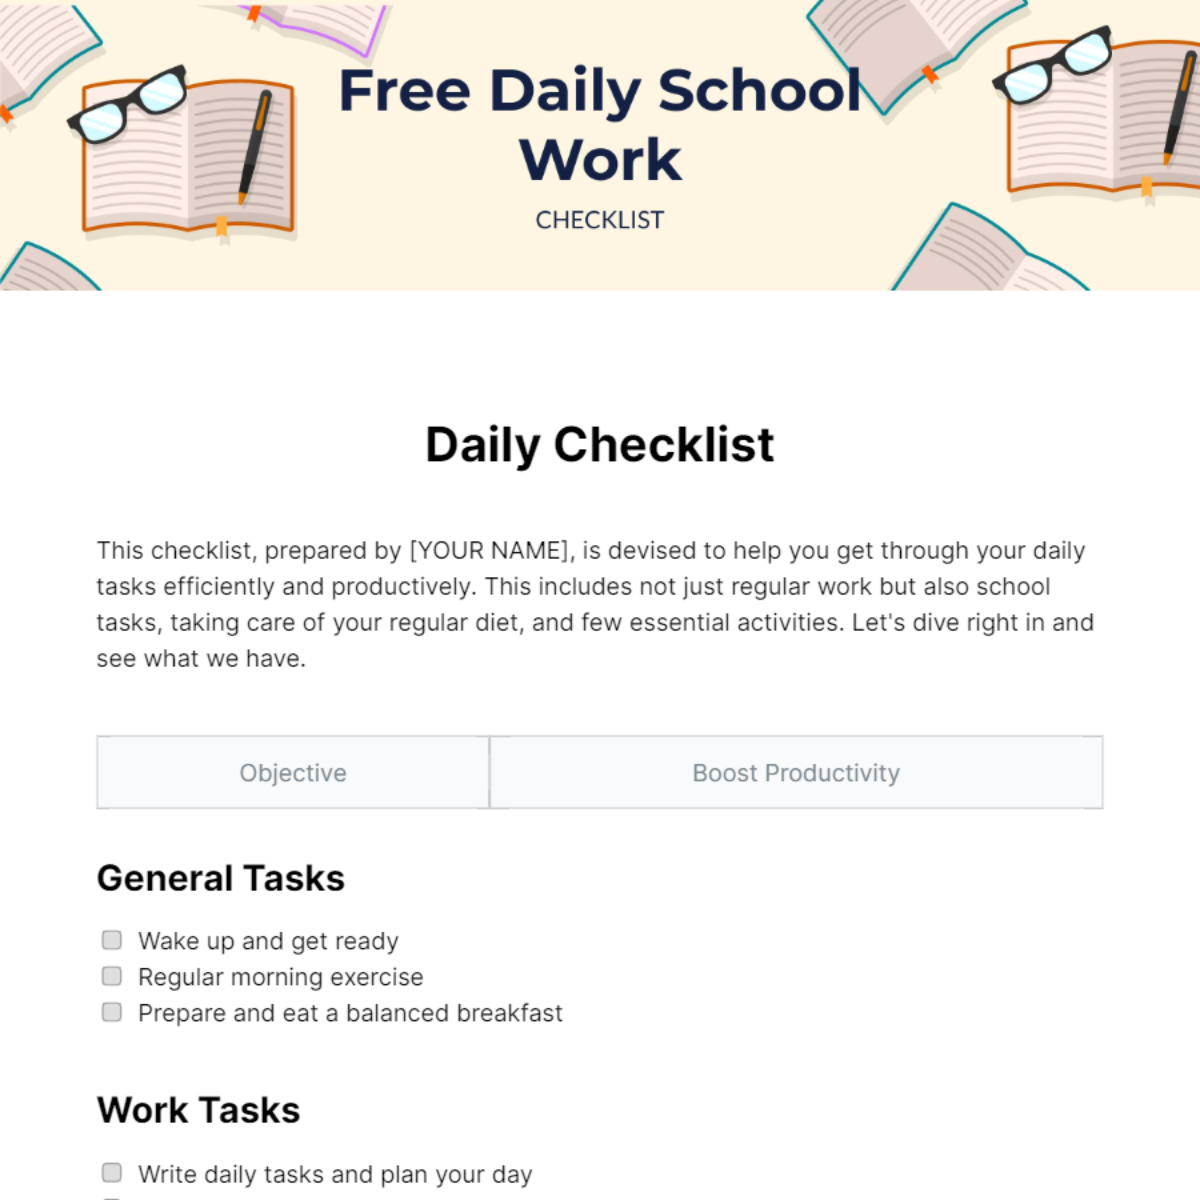 Daily School Work Checklist Template